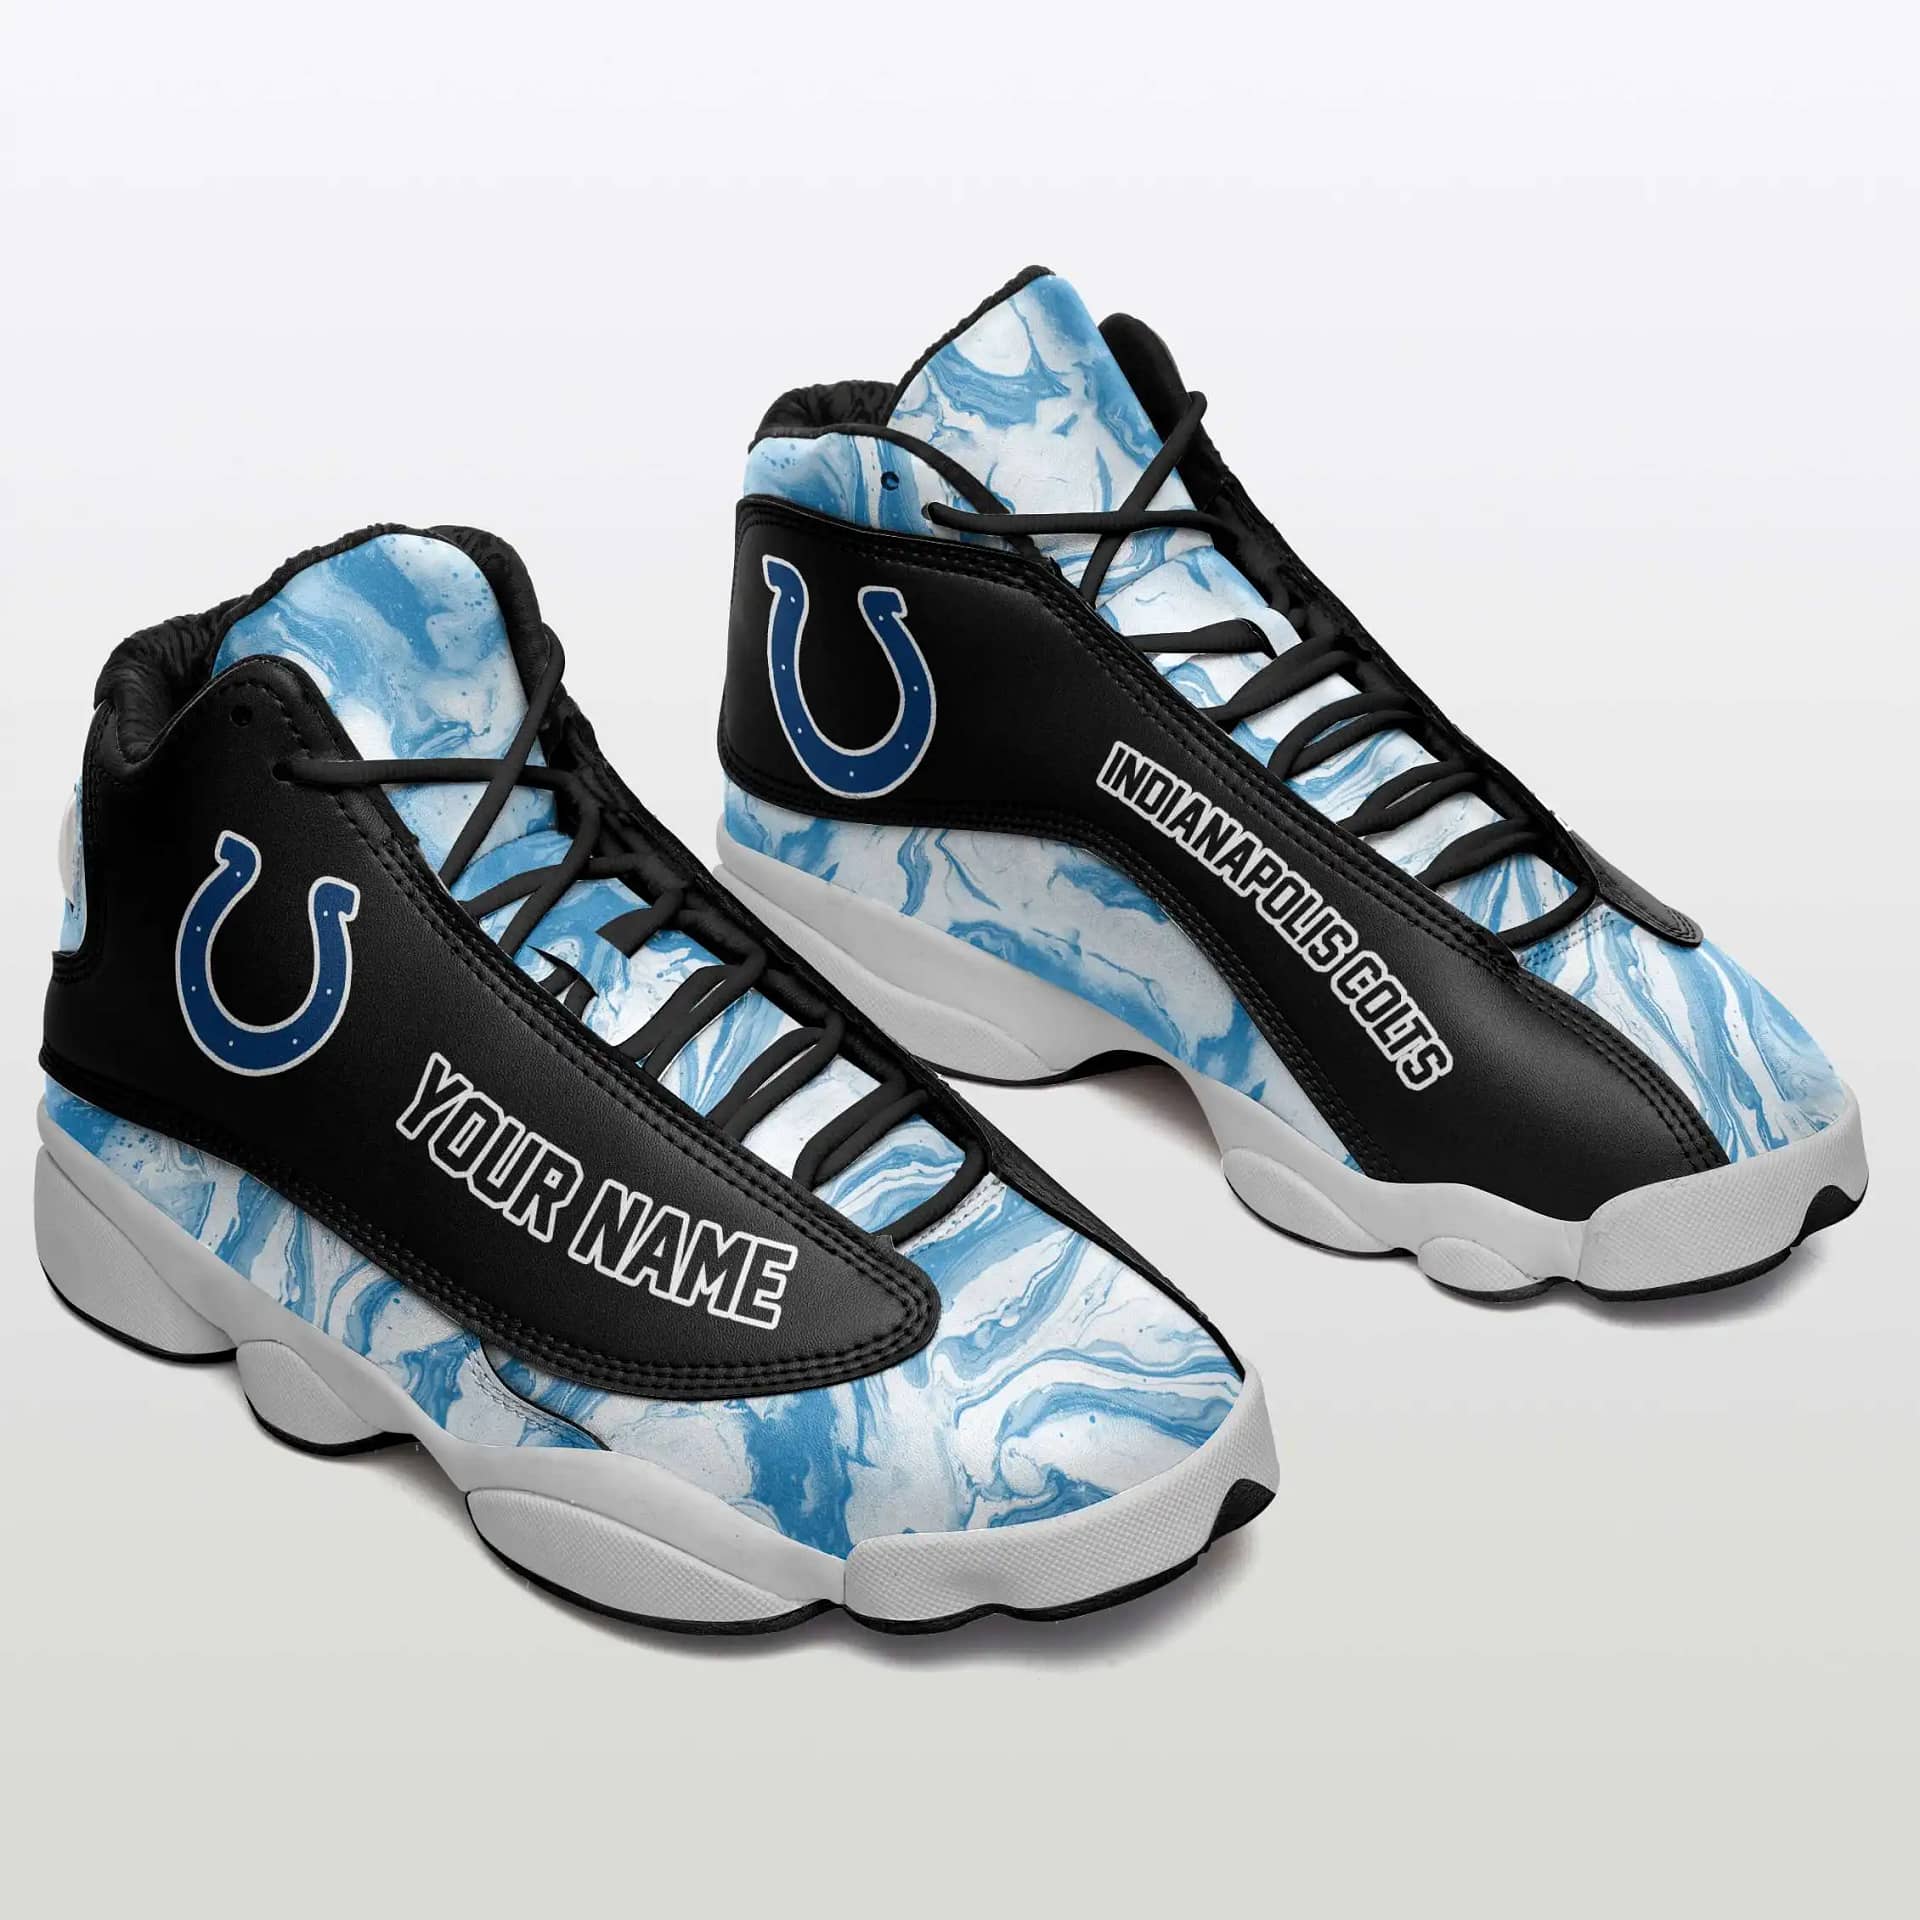 Indianapolis Colts Air Jordan Shoes